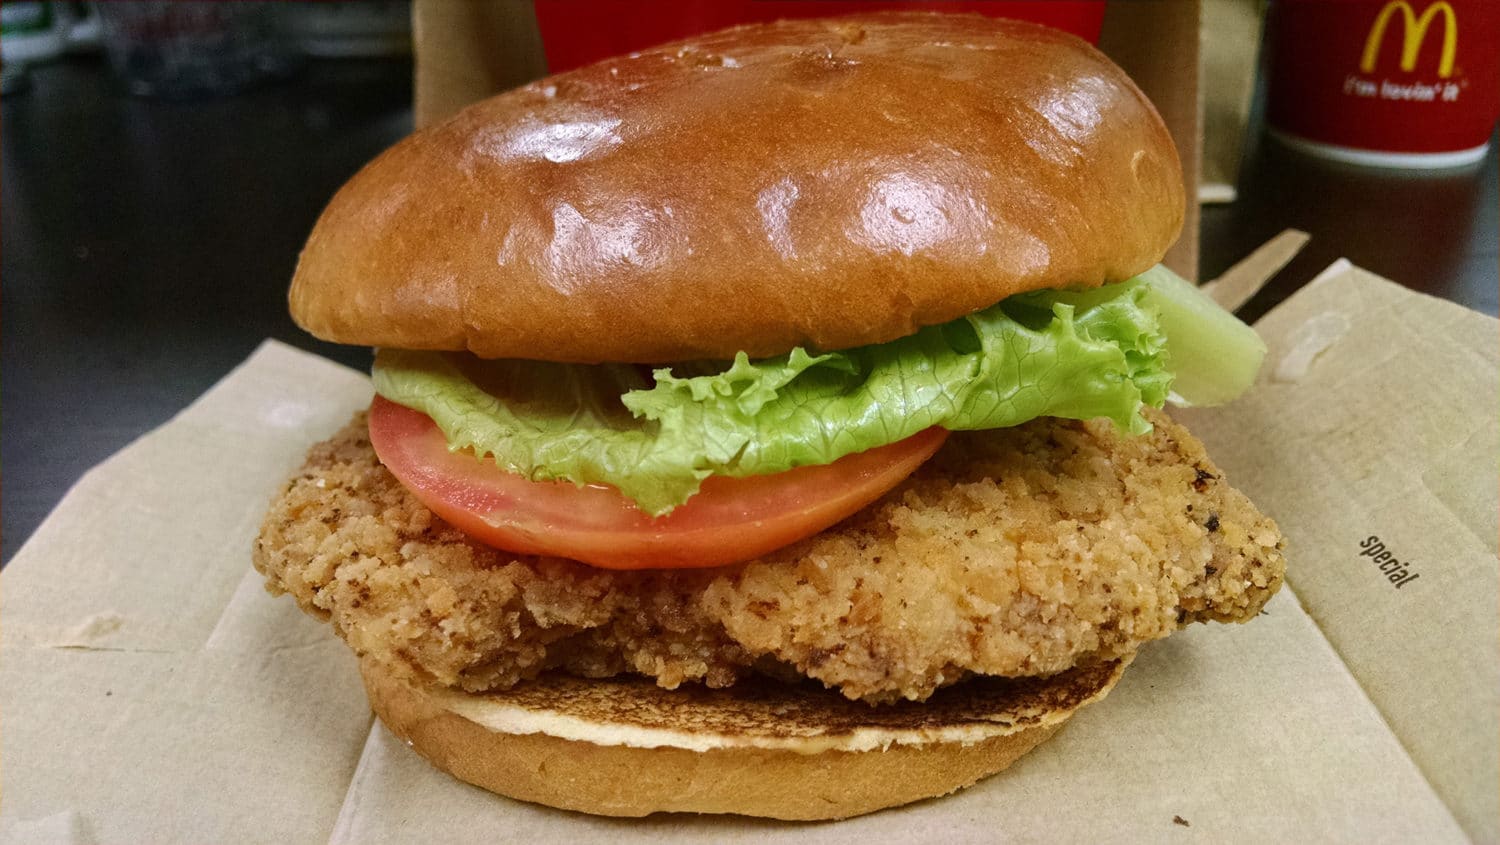 Buttermilk Crispy Chicken Sandwich from McDonald’s | Nurtrition & Price